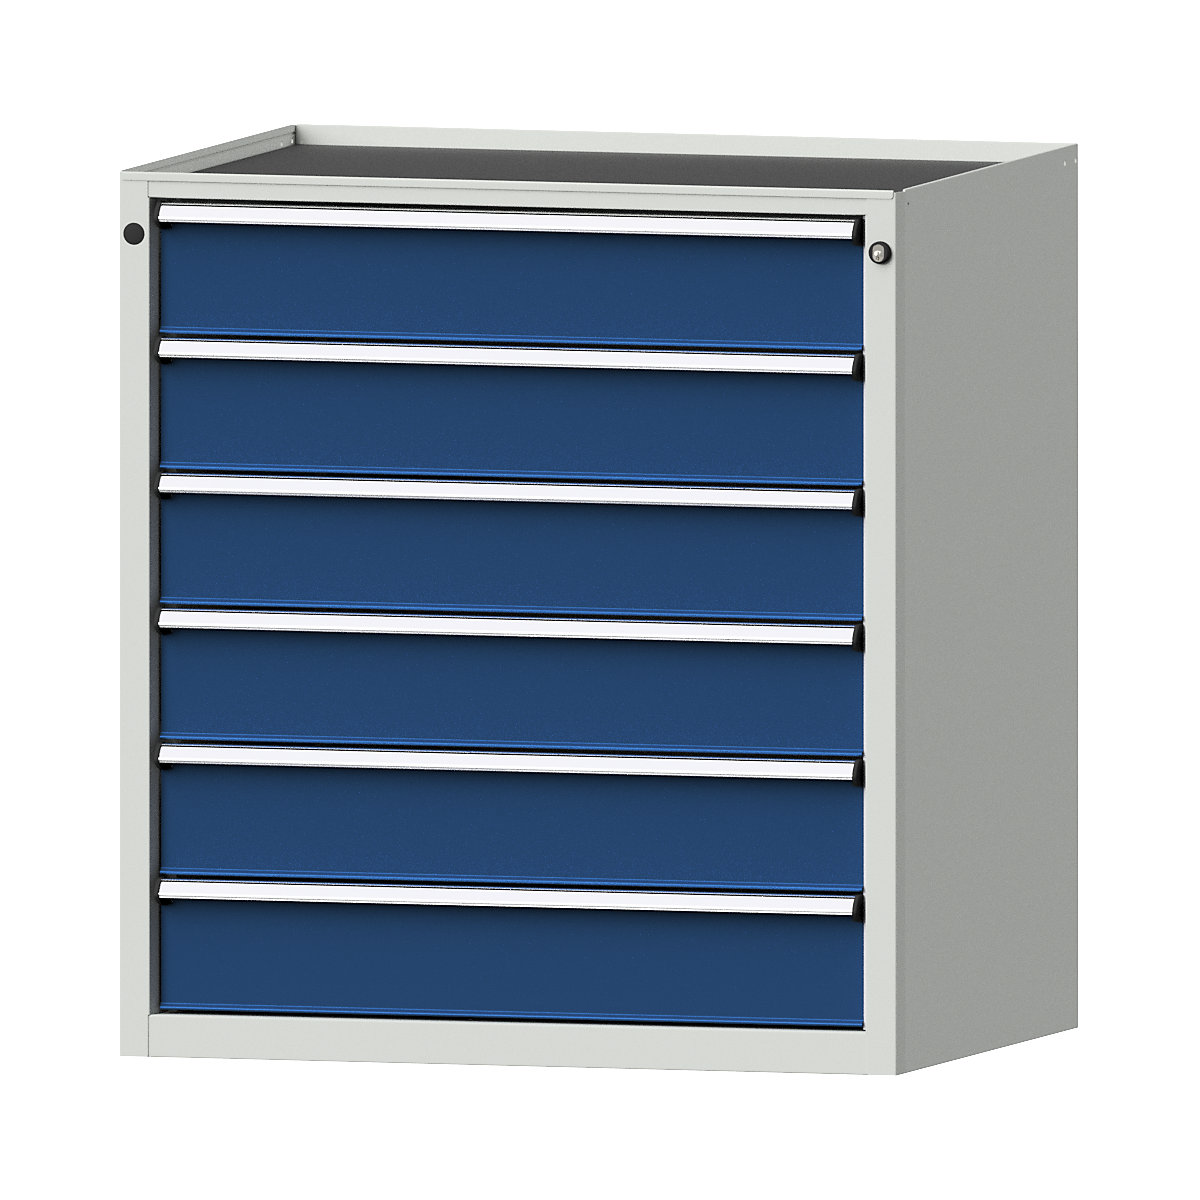 Armoire à tiroirs – ANKE, l x p 910 x 675 mm, charge max. tiroirs 200 kg, 6 tiroirs, hauteur 980 mm, façade bleu gentiane-17